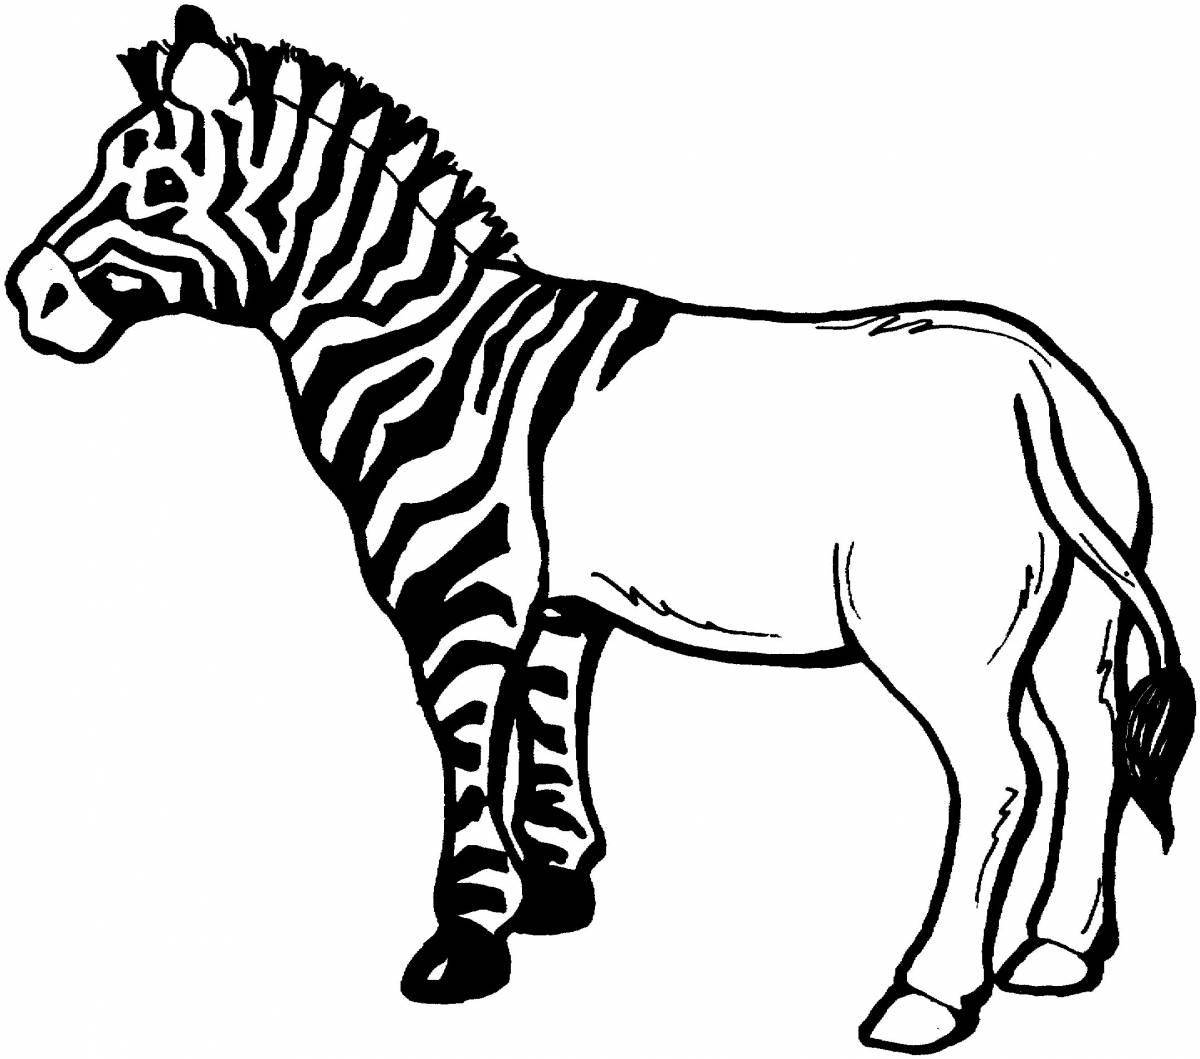 A strikingly beautiful zebra without stripes